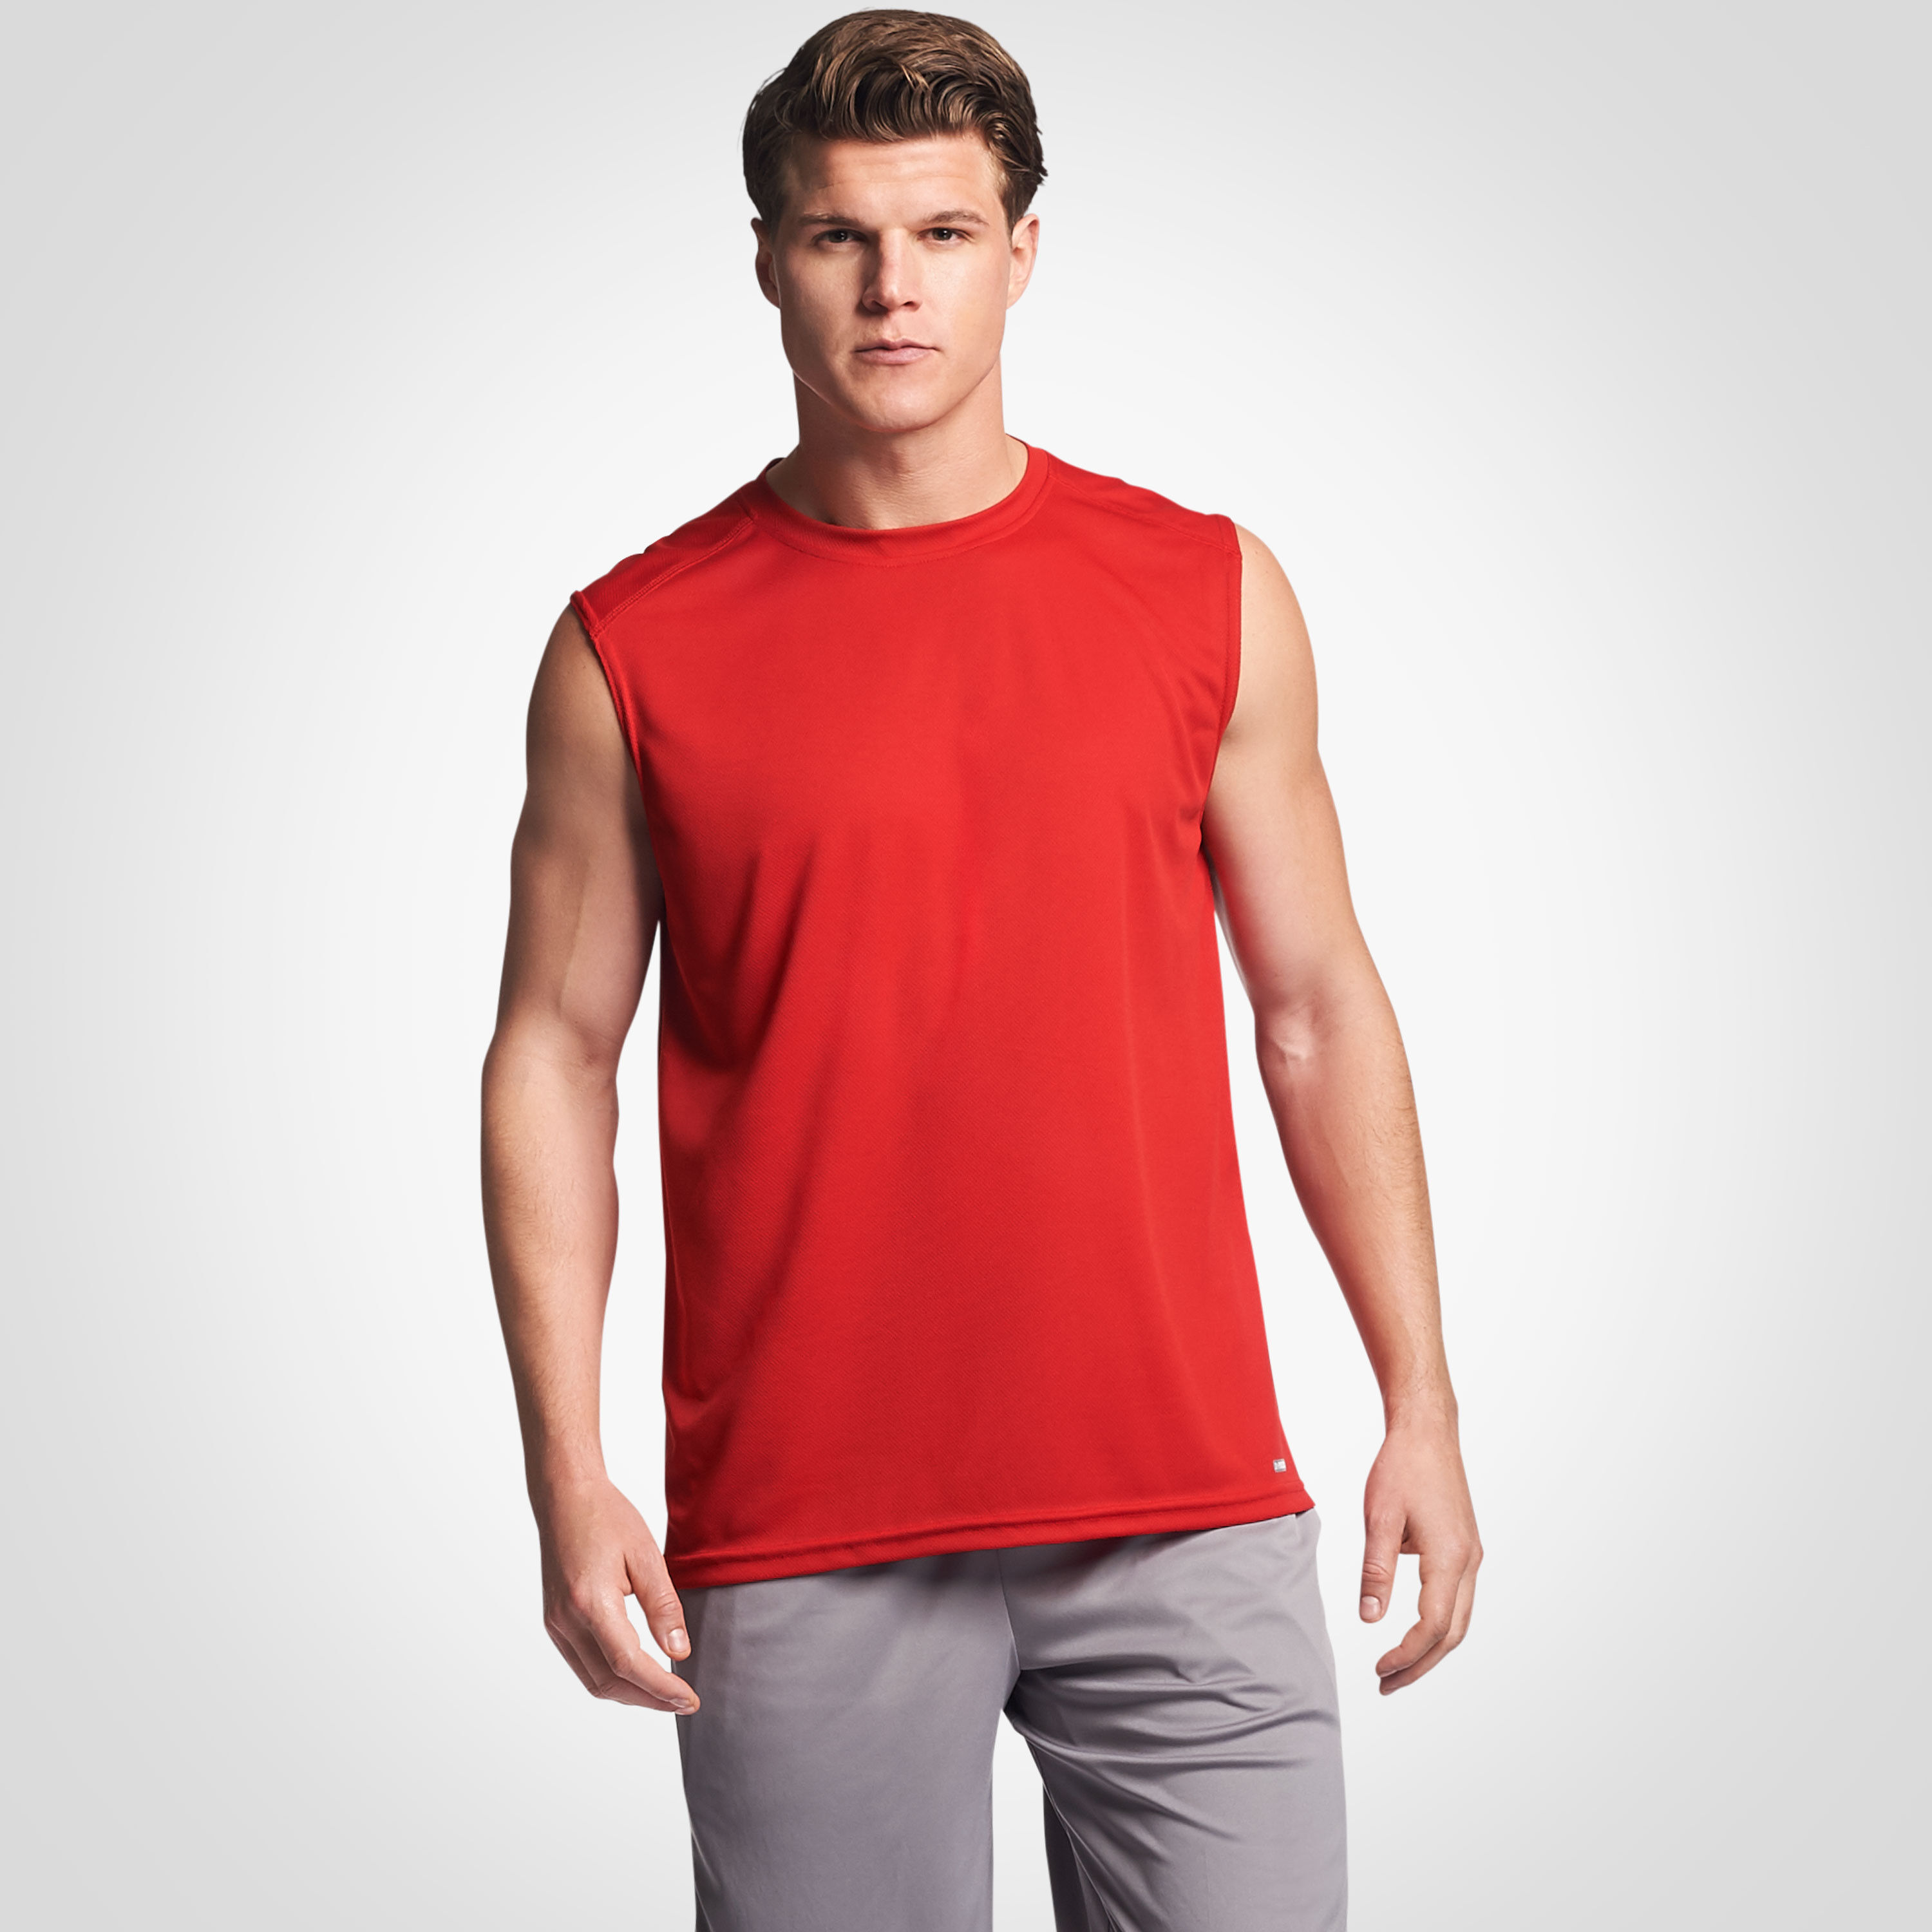 red sleeveless shirt